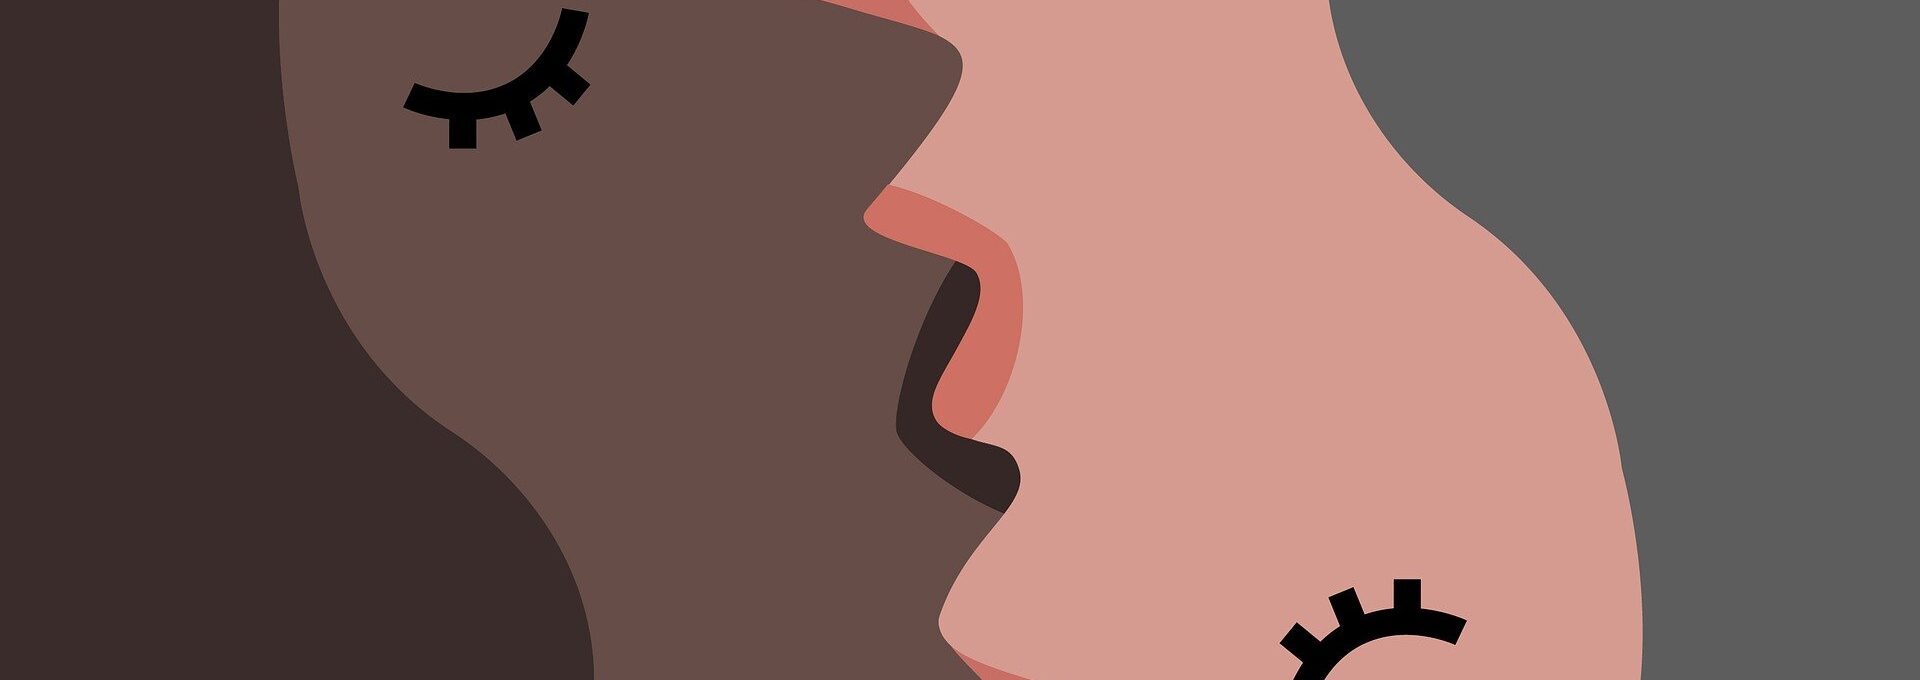 Illustration of women kissing